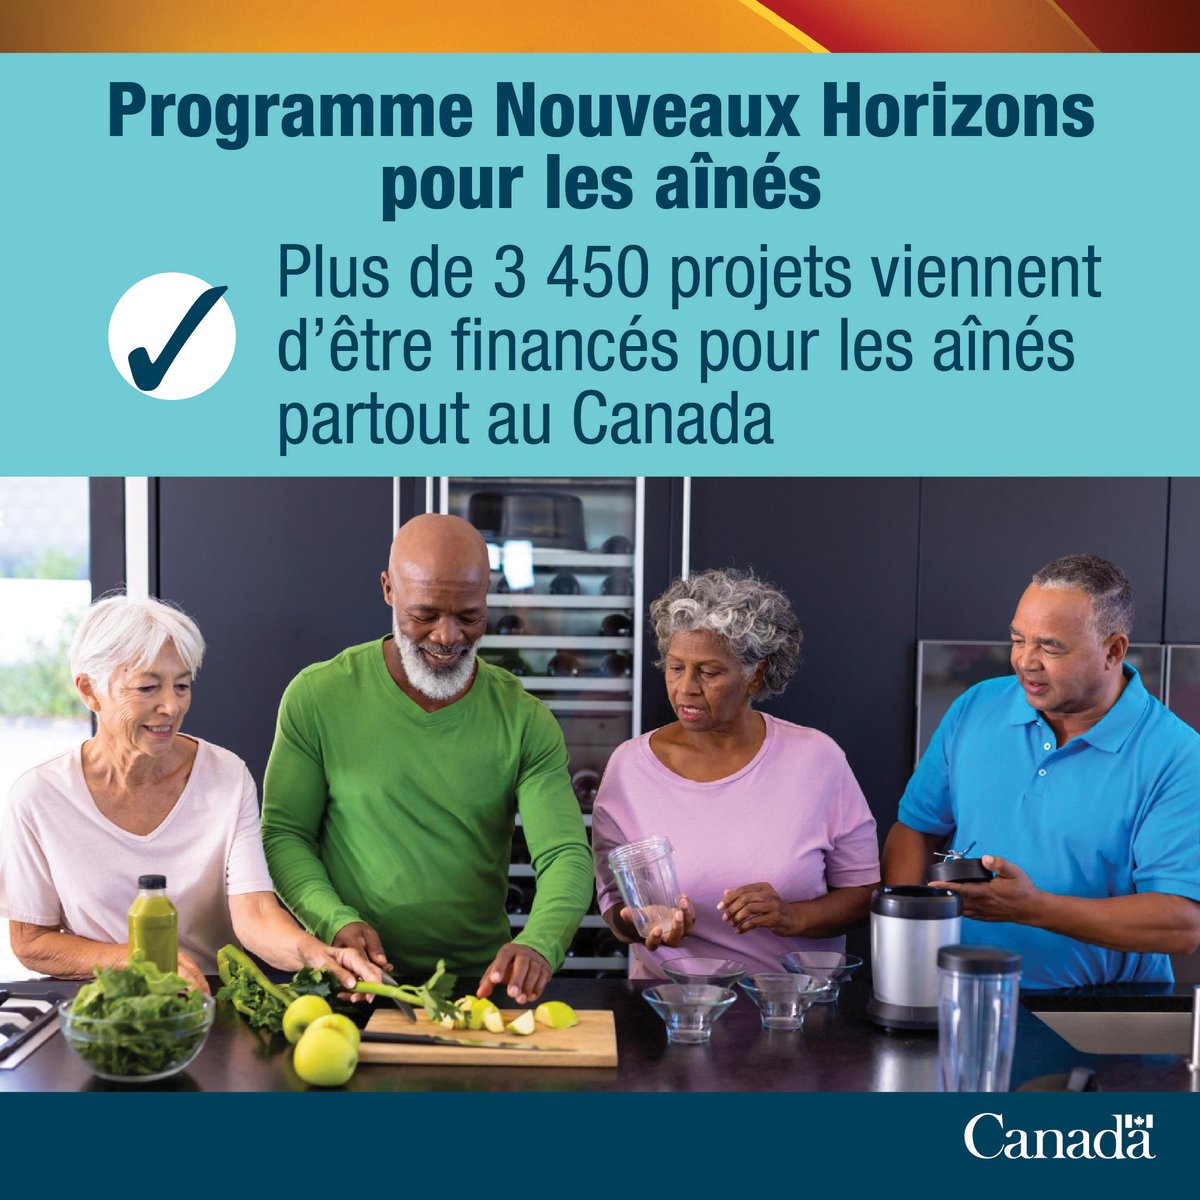 🎉 Plus de 3 450 projets communautaires qui appuient les aînés ont reçu 70 millions de dollars en financement! Le programme #NouveauxHorizonsPourLesAînés continuera à avoir des répercussions positives partout au #Canada! 🔗 ow.ly/XW0z50RIRTy